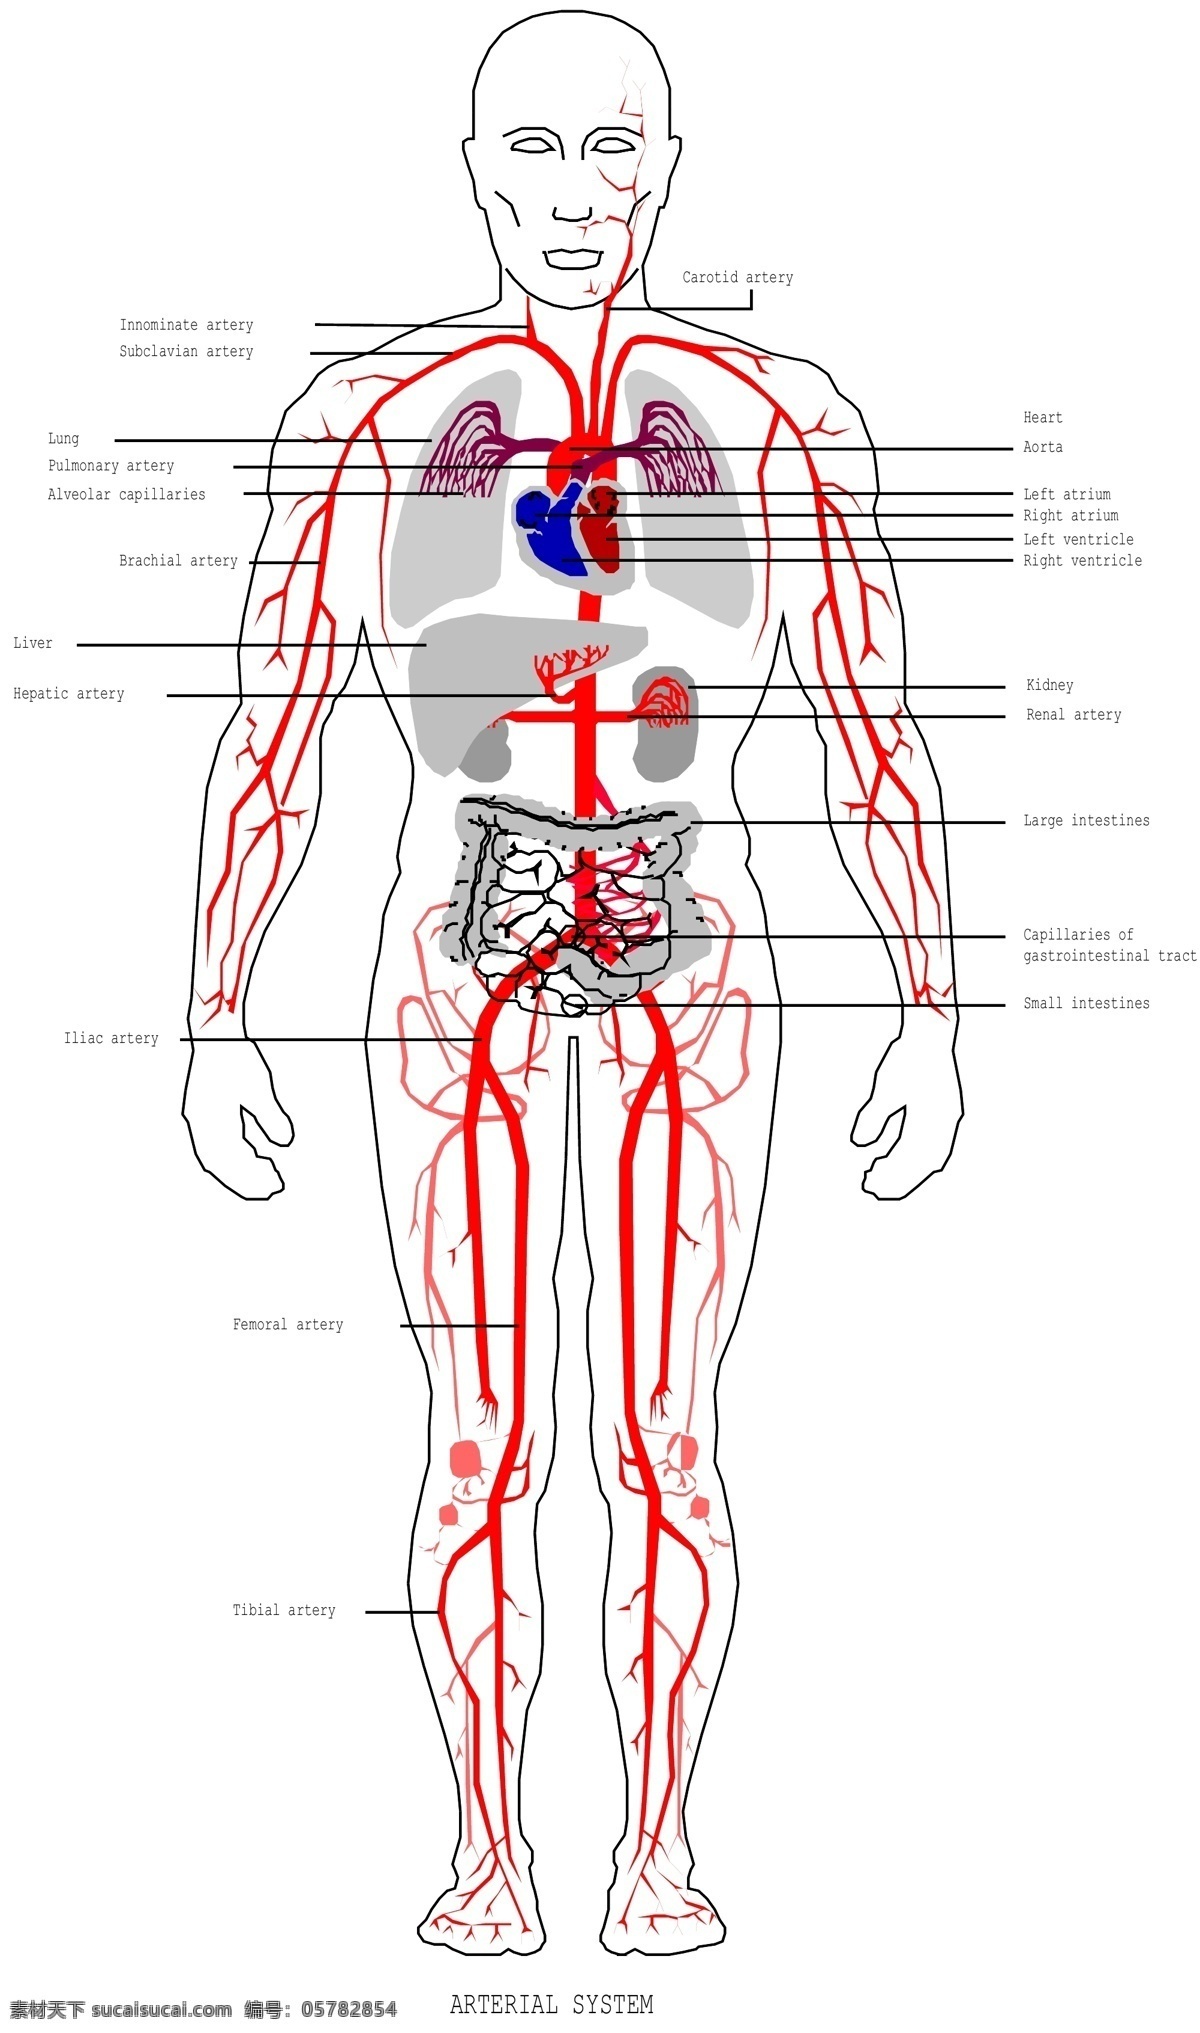 内脏 解剖 图 商业矢量 矢量下载 内脏解剖图 网页矢量 矢量用具